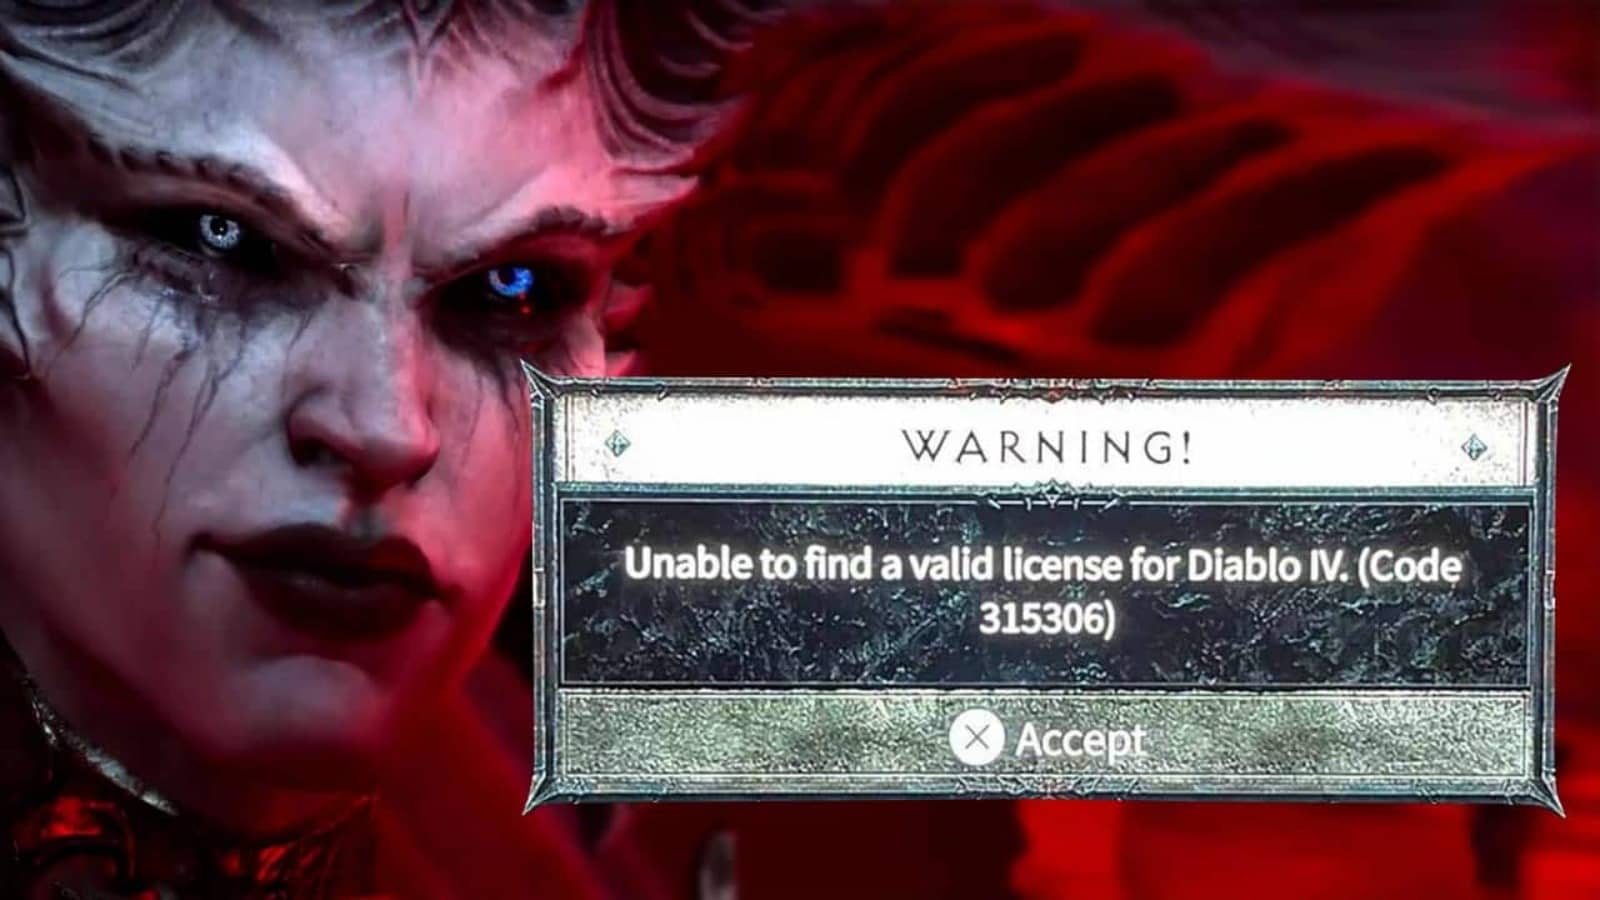 Diablo 4 "Geçerli Lisans Bulunamadı" 315306 Hata Kodu Çözümü